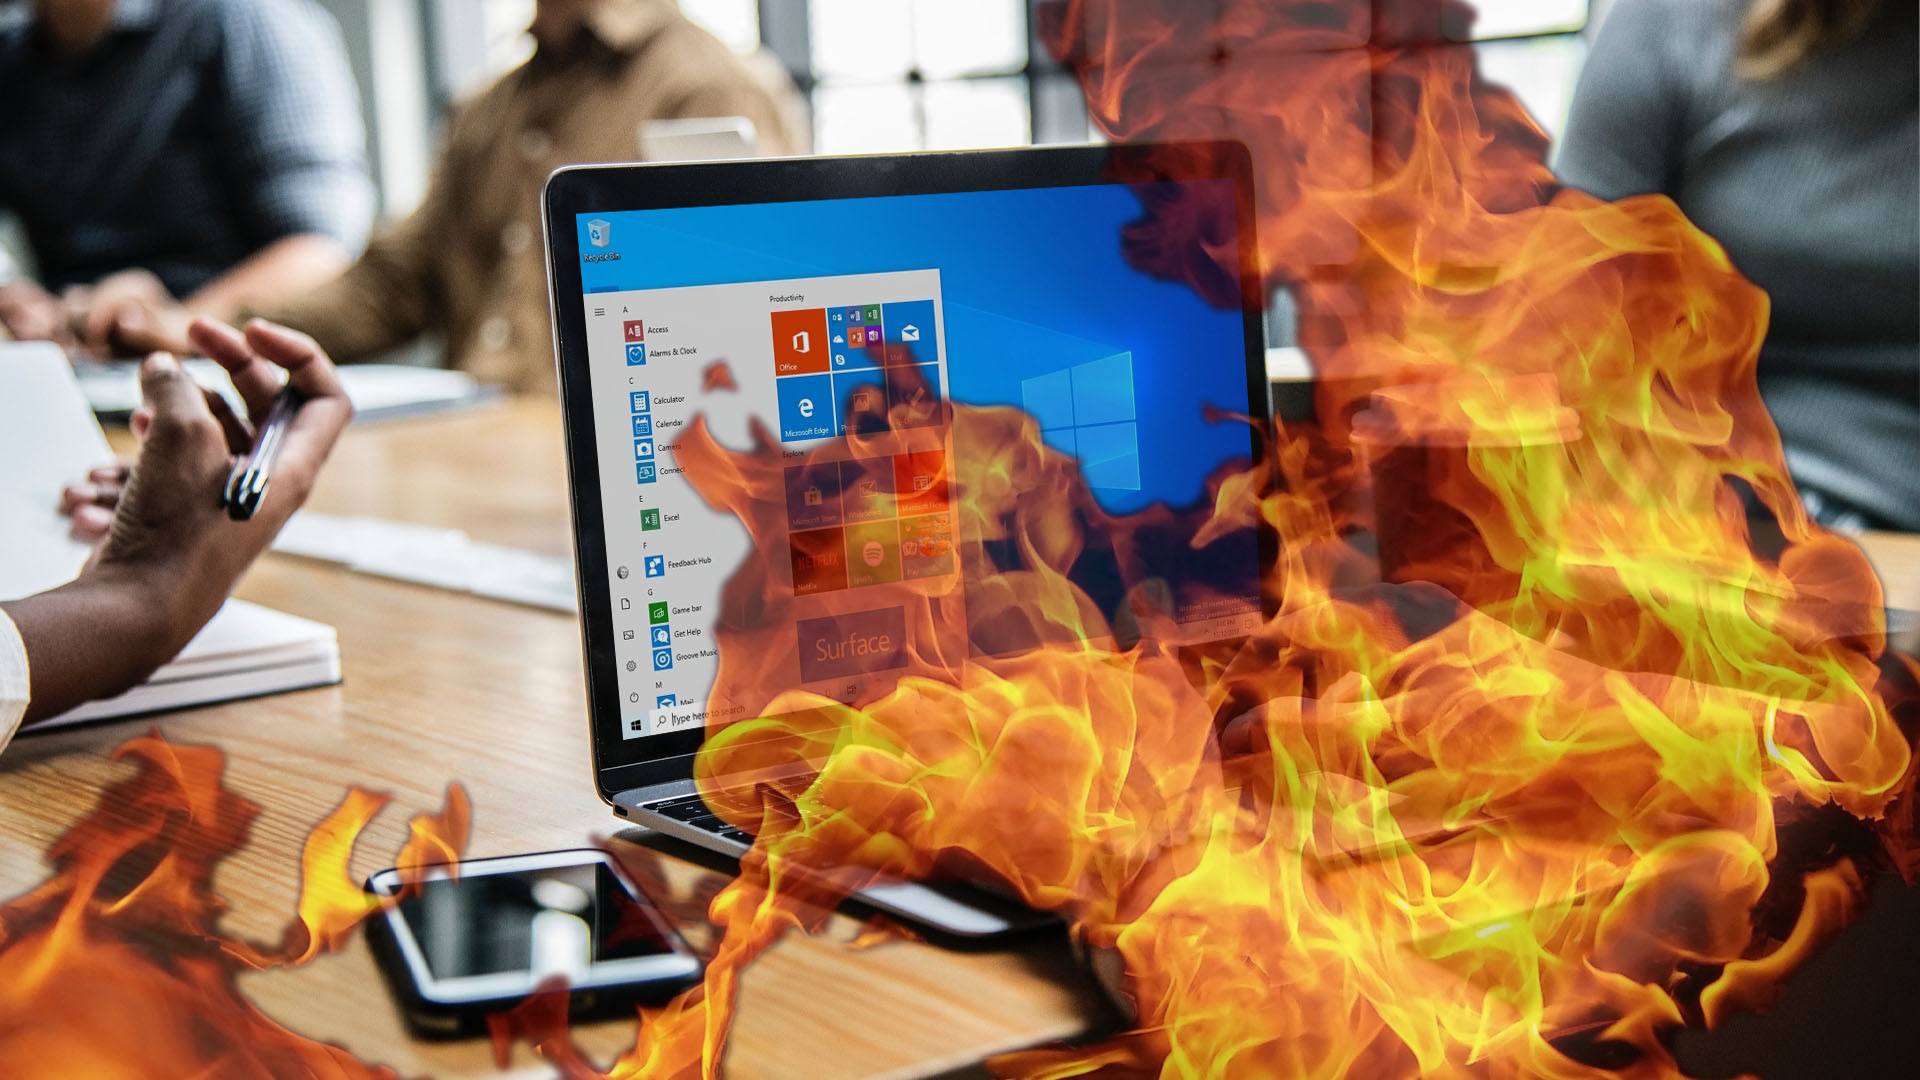 Windows 10 Mai 2019 Update: Die Liste der bekannten Fehler wächst